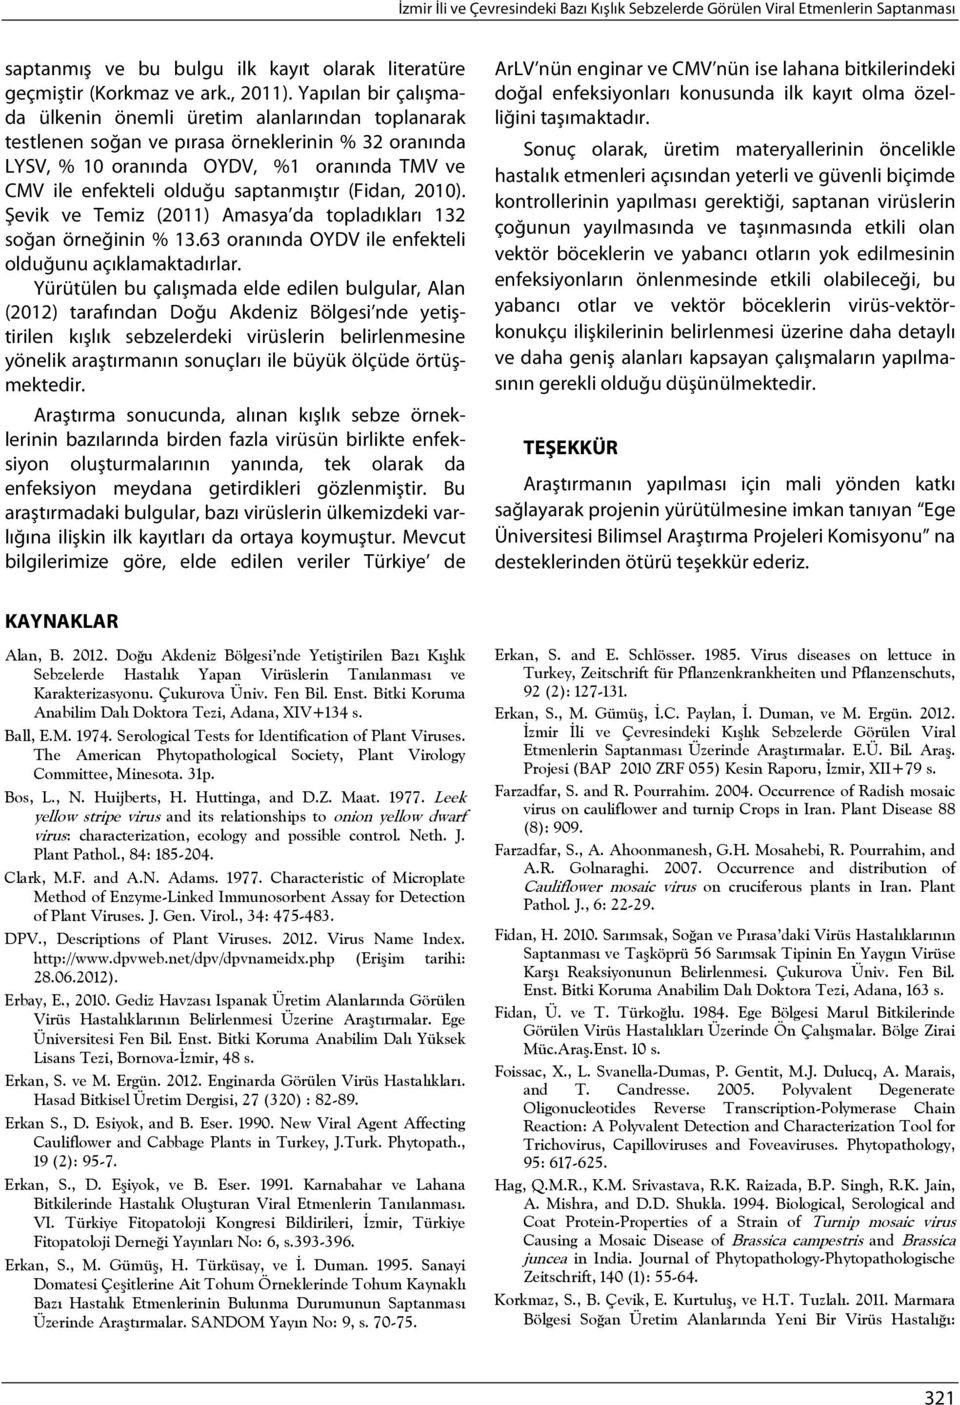 saptanmıştır (Fidan, 2010). Şevik ve Temiz (2011) Amasya da topladıkları 132 soğan örneğinin % 13.63 oranında OYDV ile enfekteli olduğunu açıklamaktadırlar.